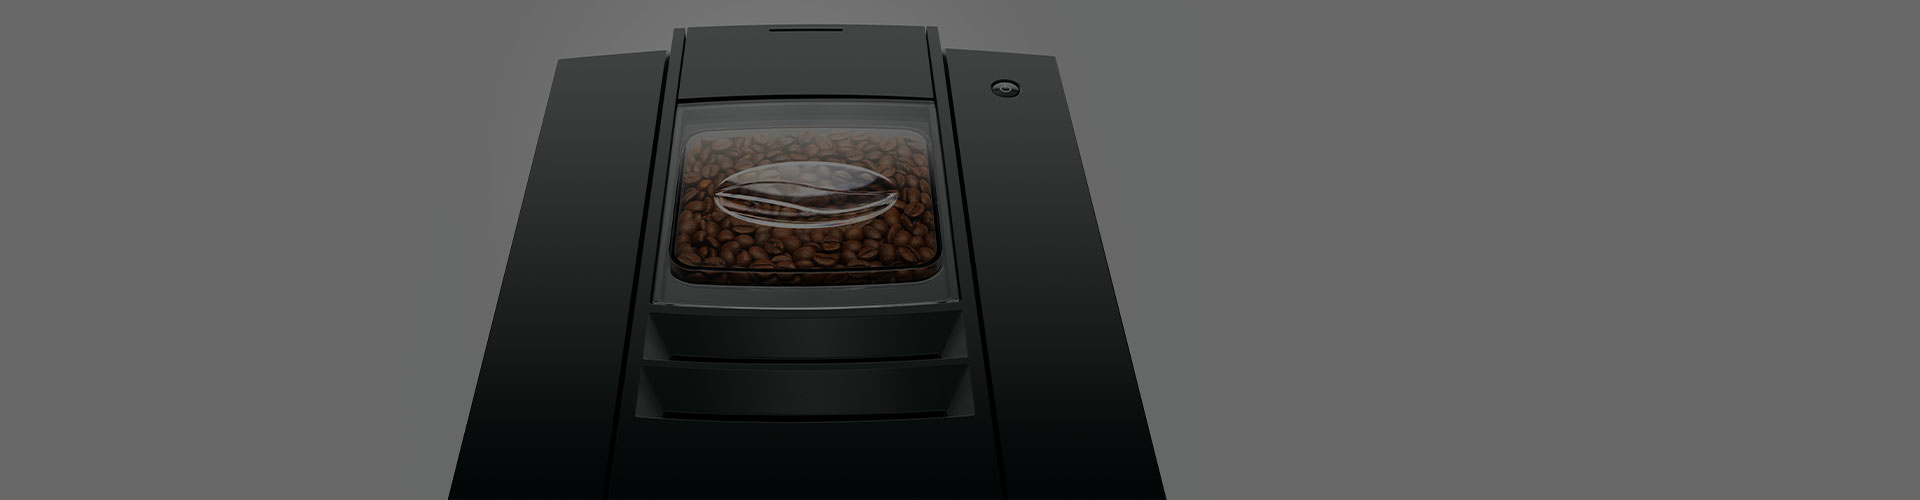 Jura E6 koffiemachine melksysteem reiniging